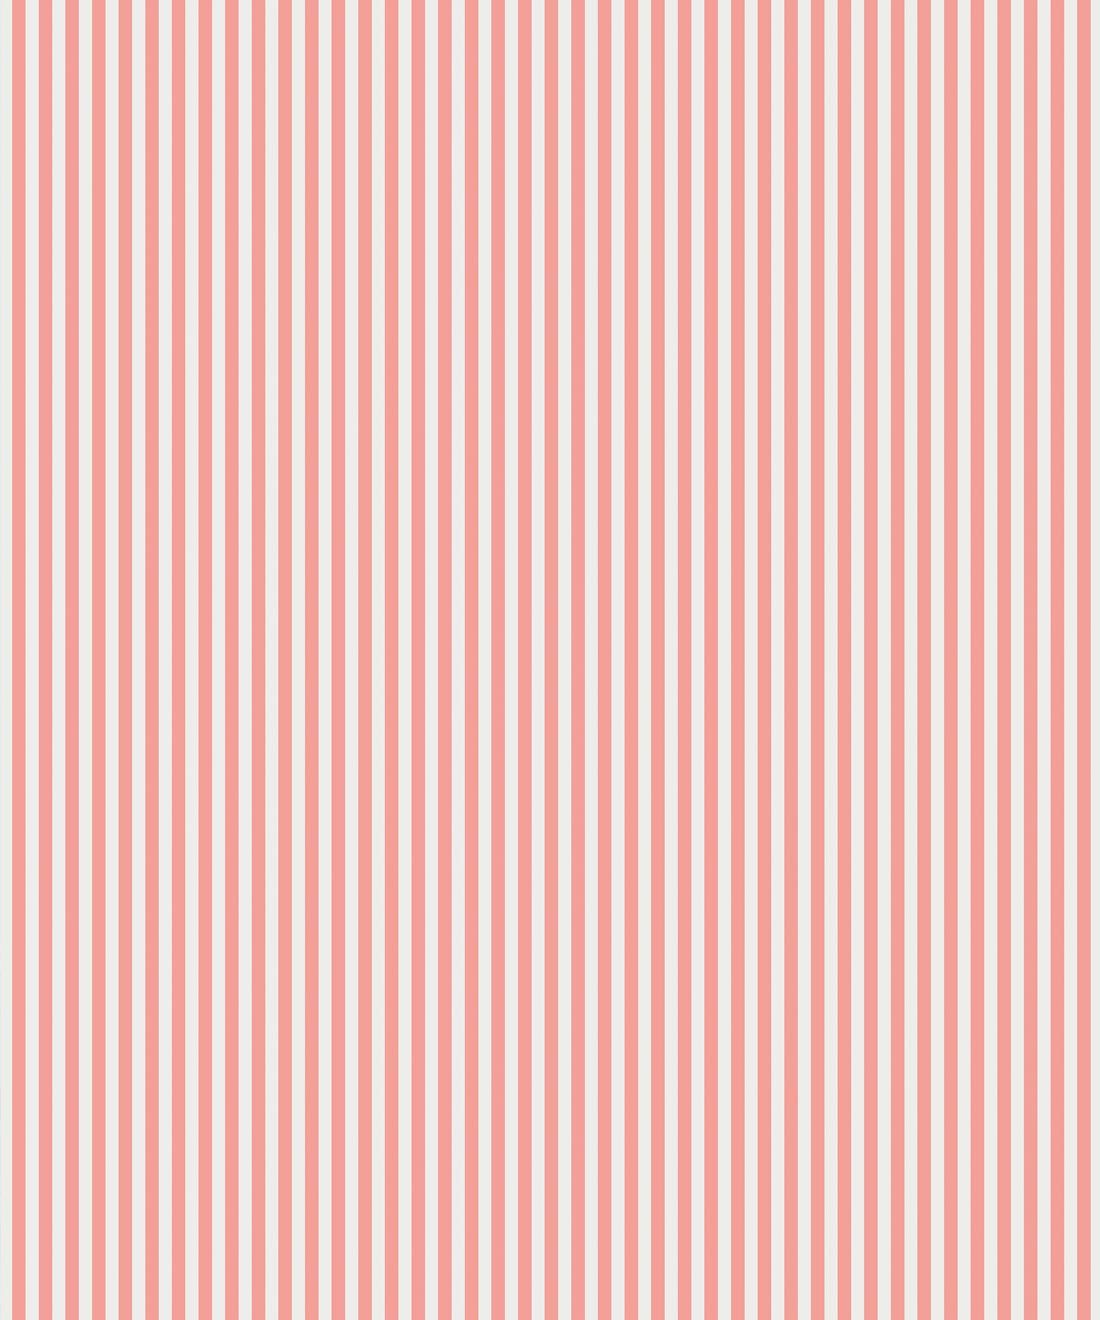 Candy Stripe Wallpaper • Classic Stipe Design